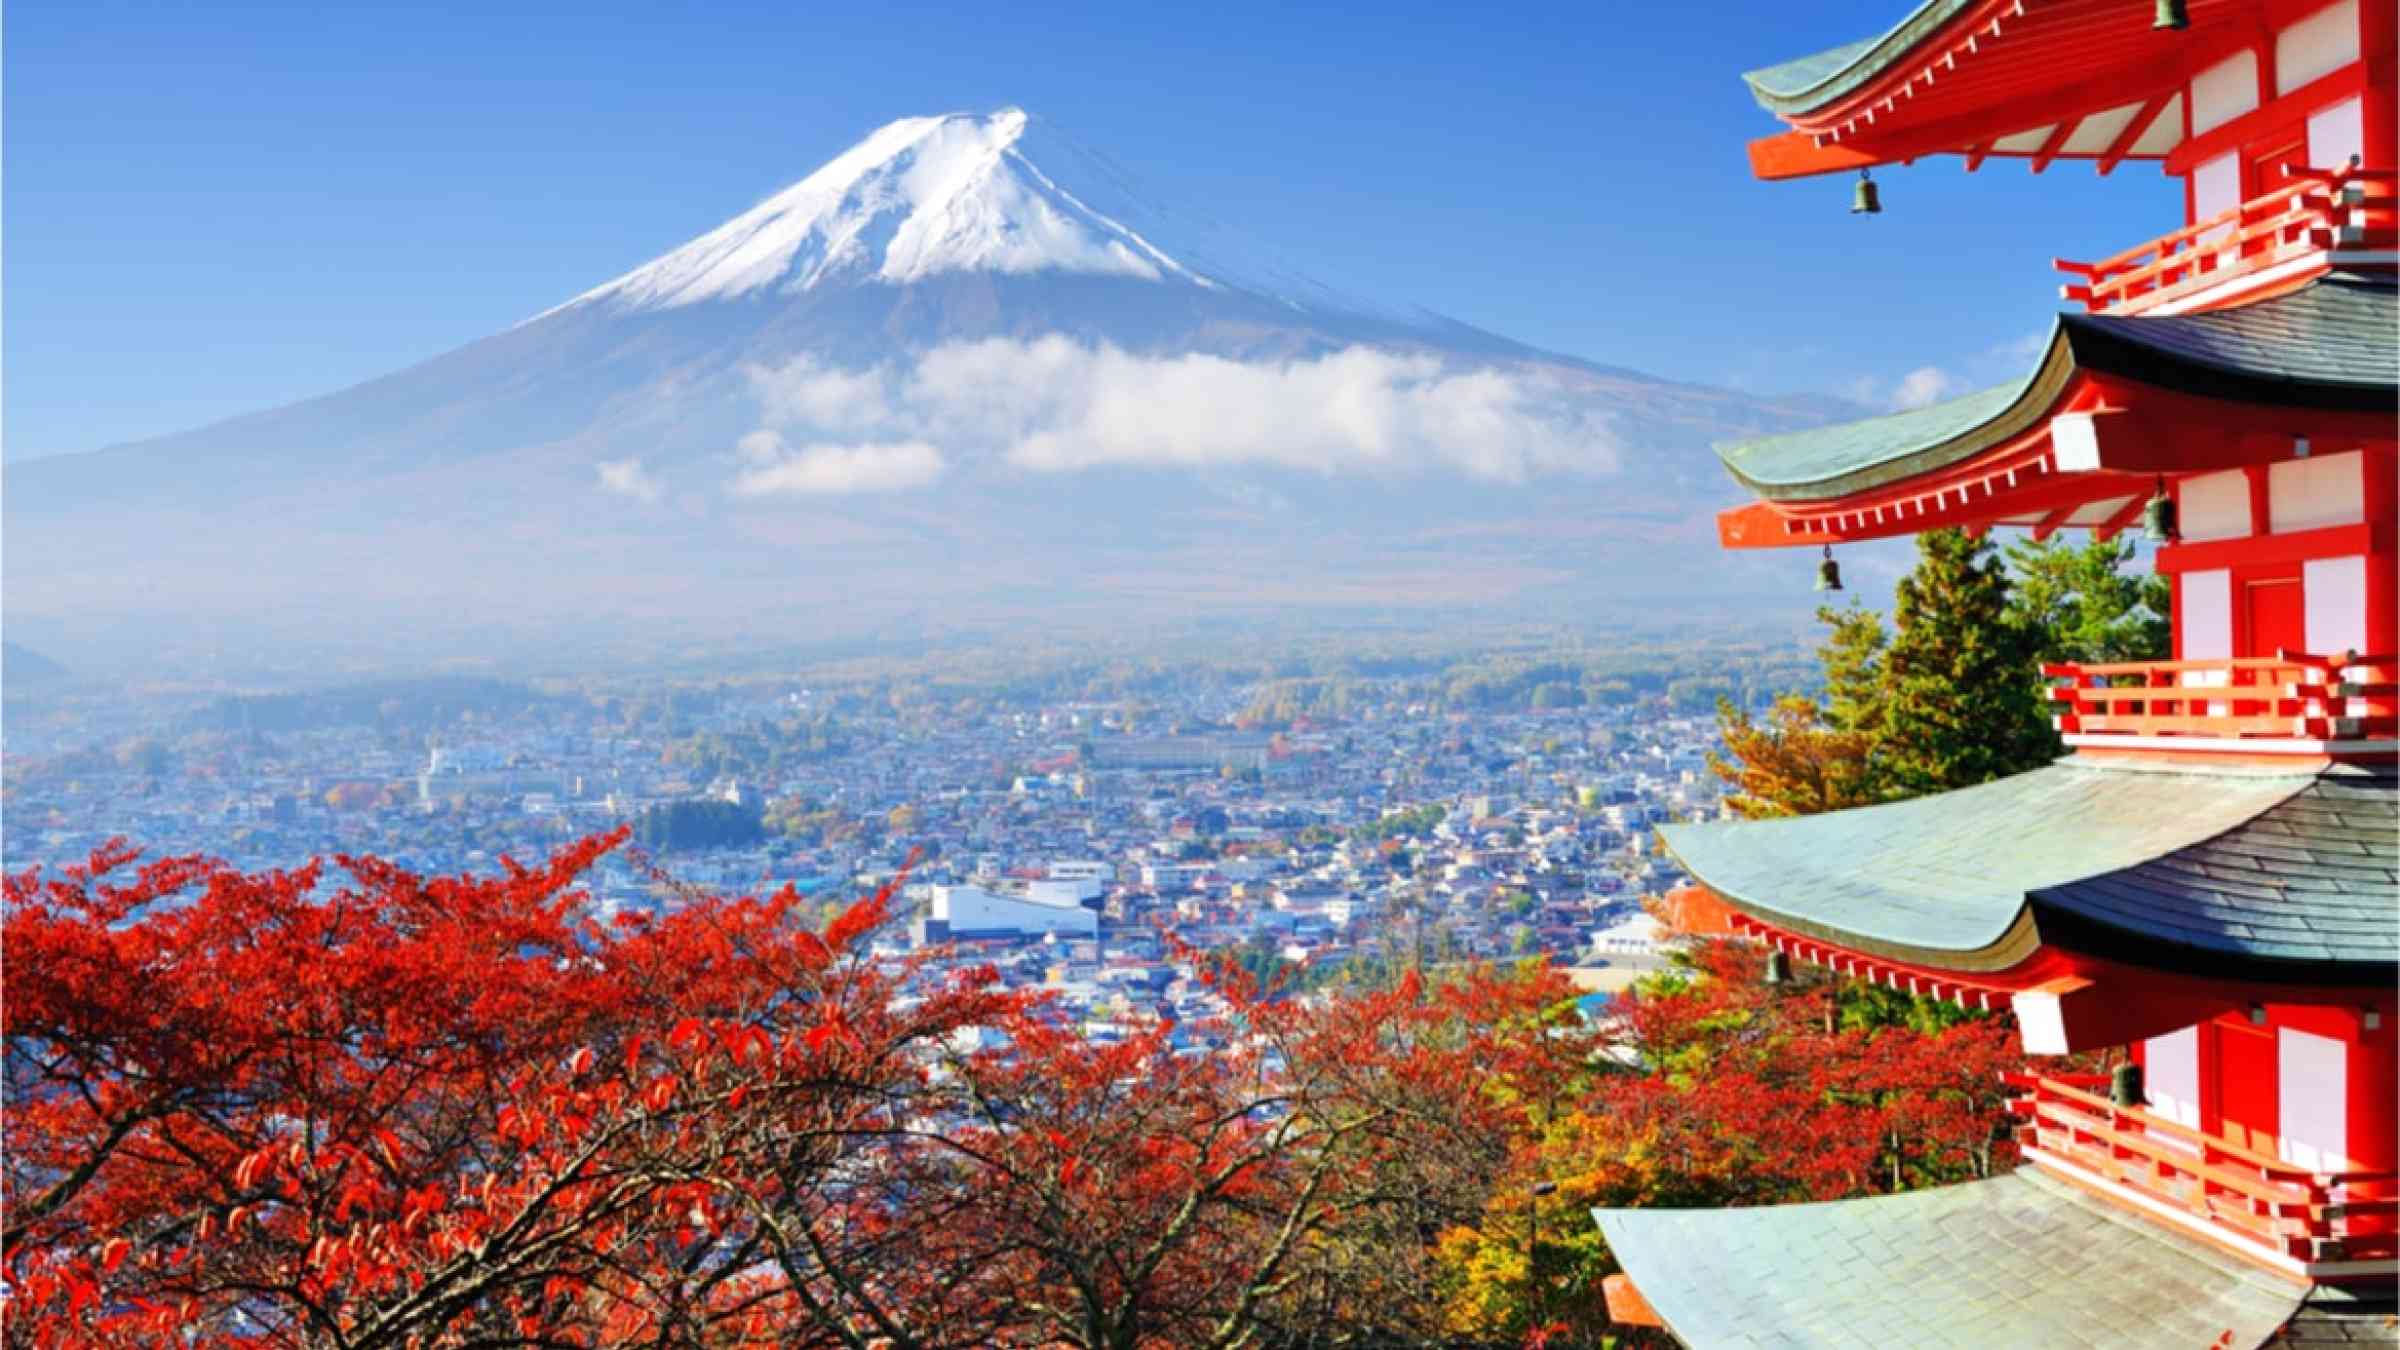 Mount Fuji during autumn in Japan.